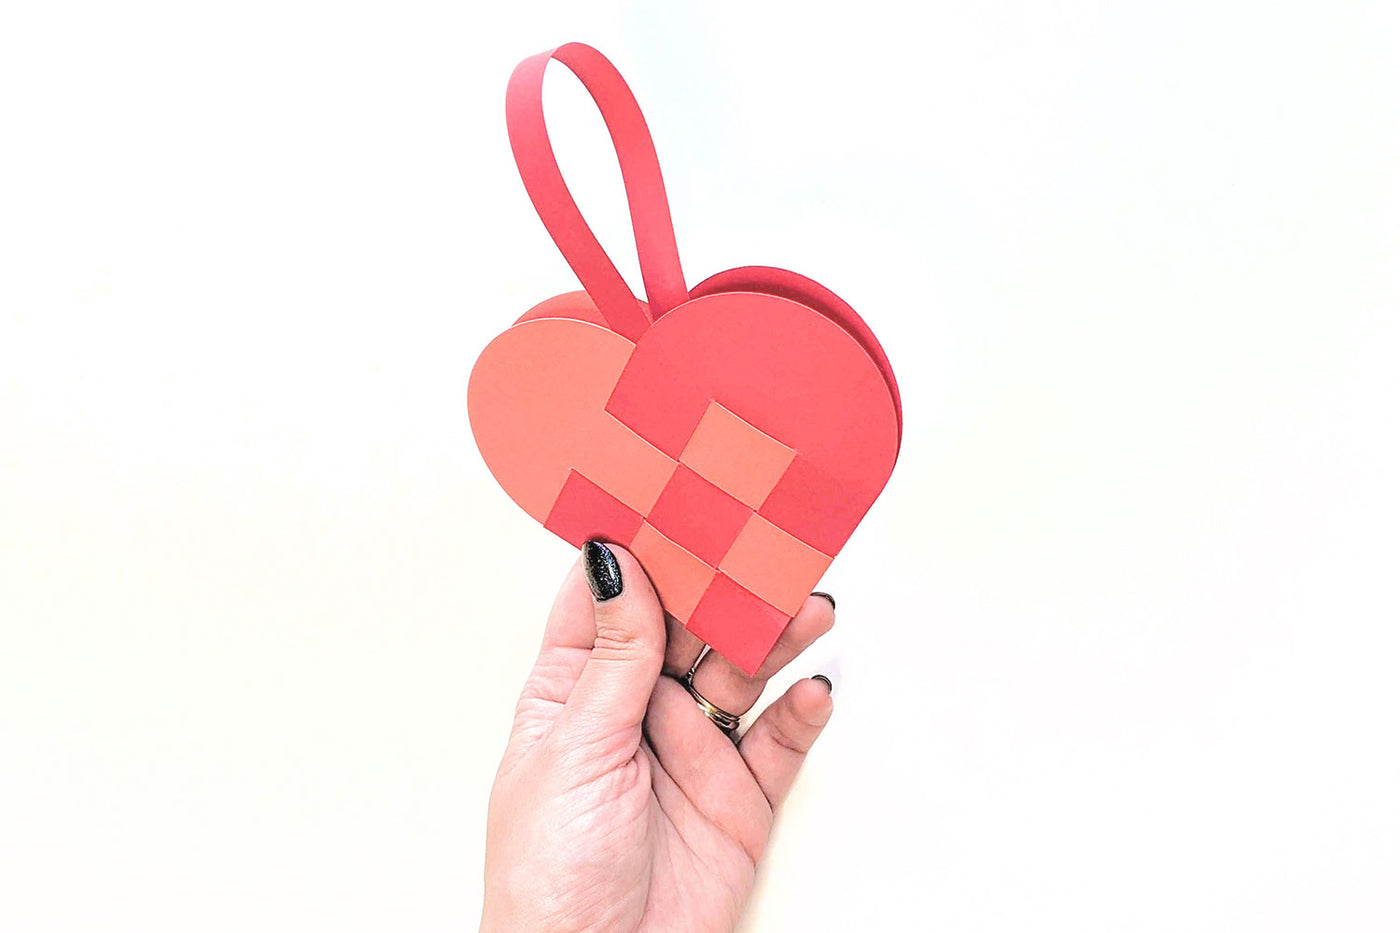 Woven heart basket SVG template